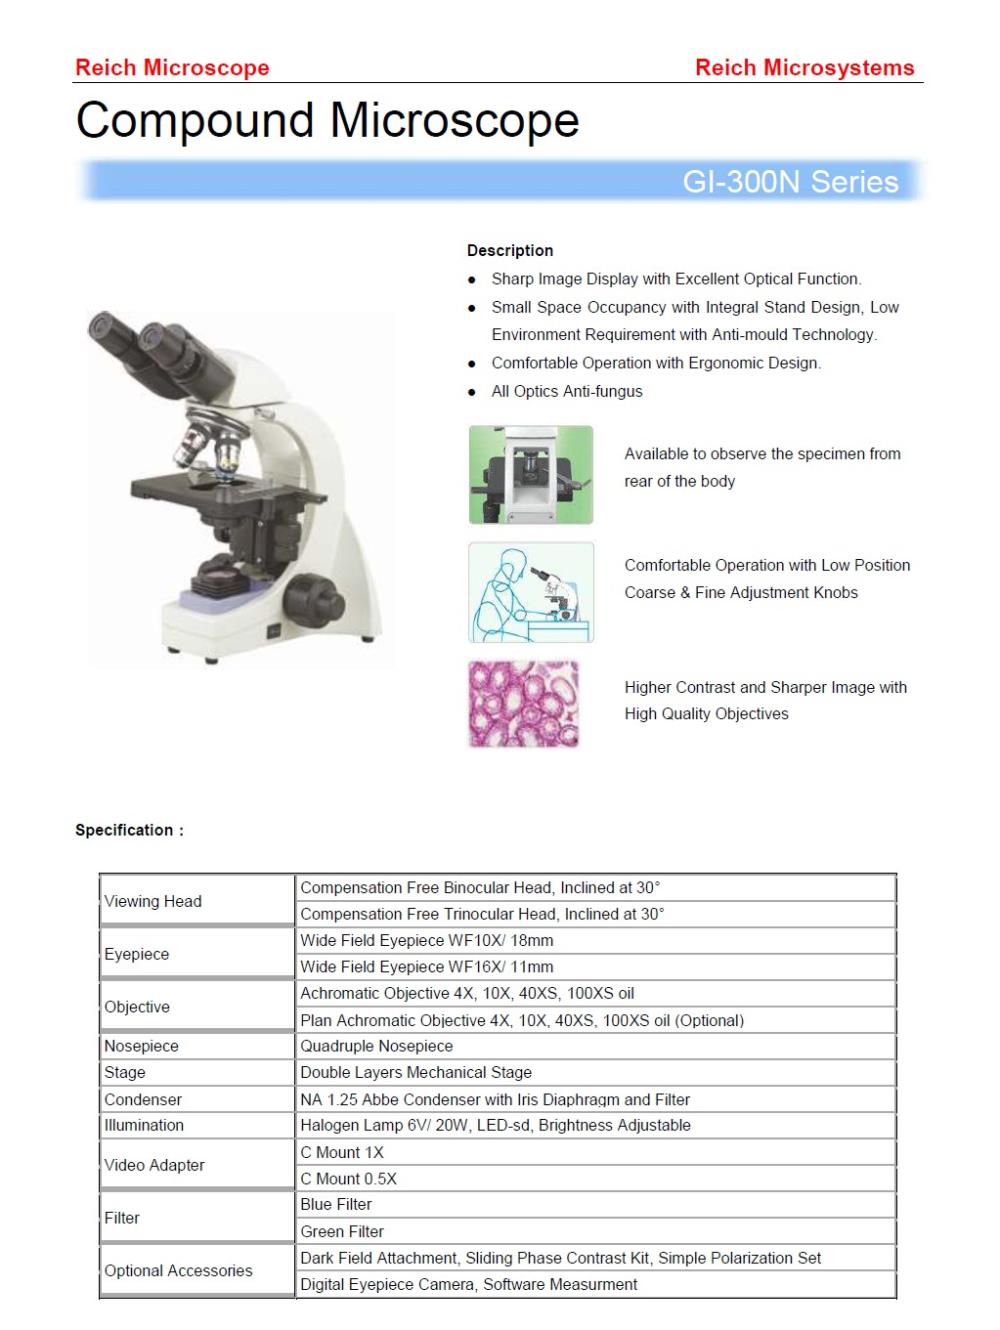 Compound Microscope (กล้องจุลทรรศน์)